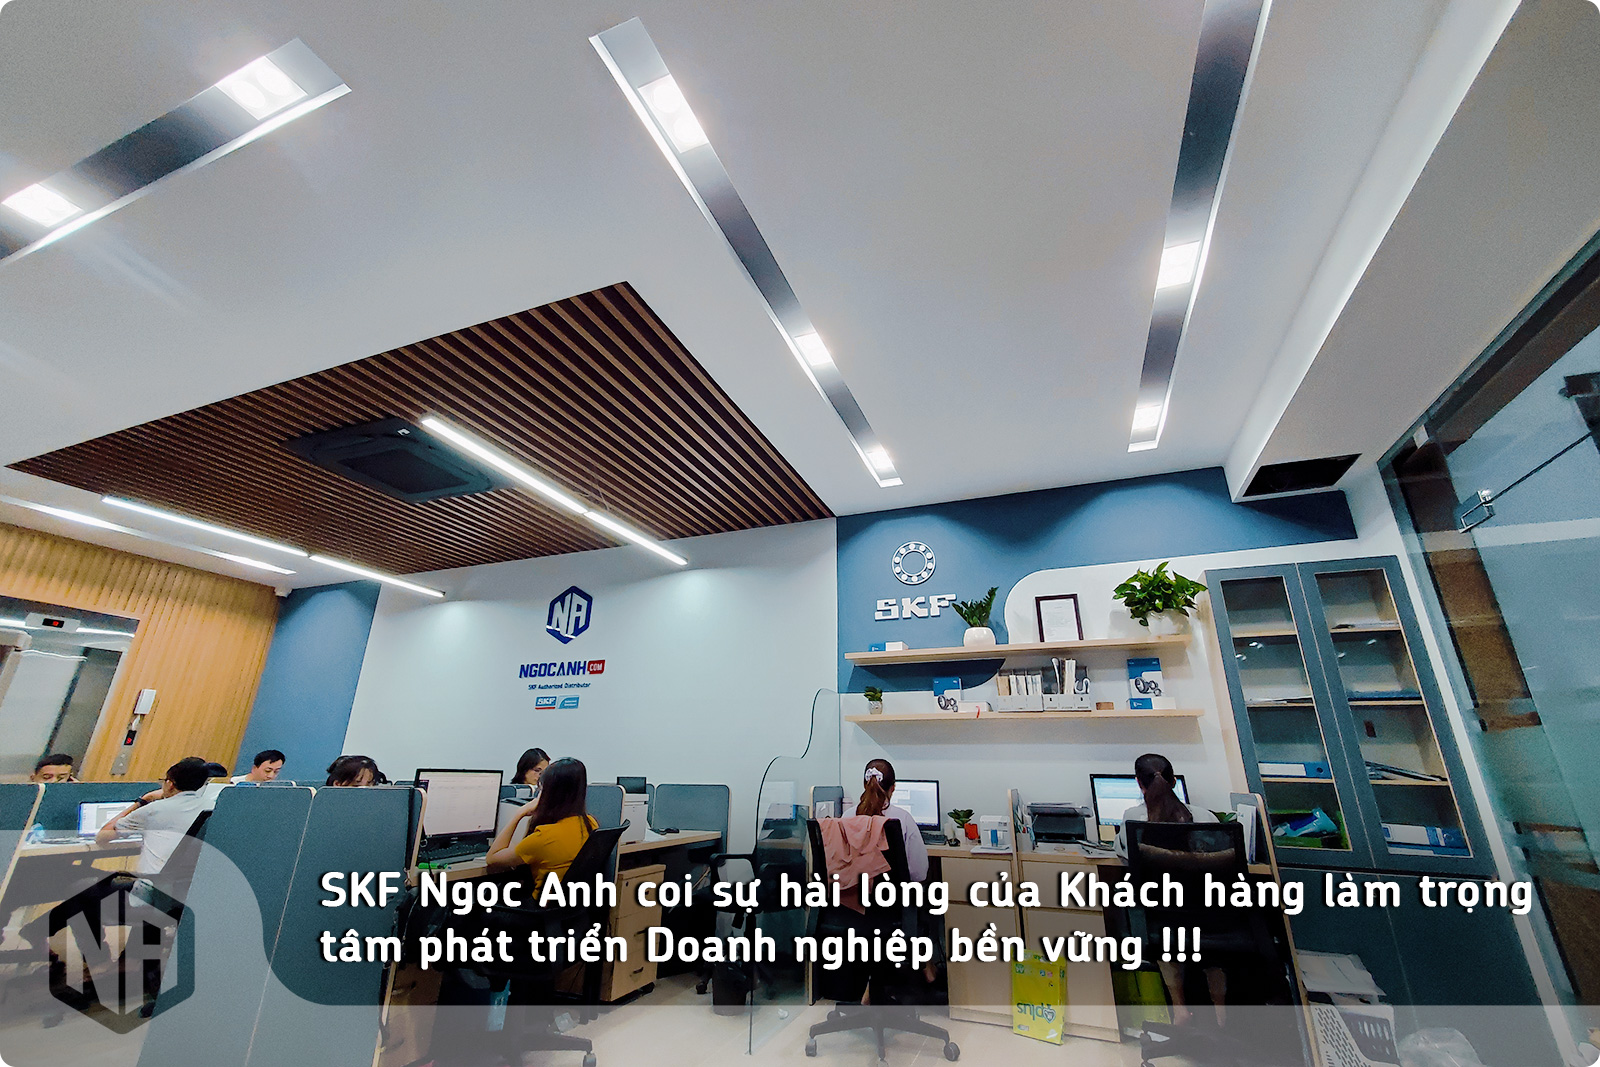 SKF Ngọc Anh coi sự hài lòng của Khách hàng làm trọng tâm phát triển doanh nghiệp bền vững